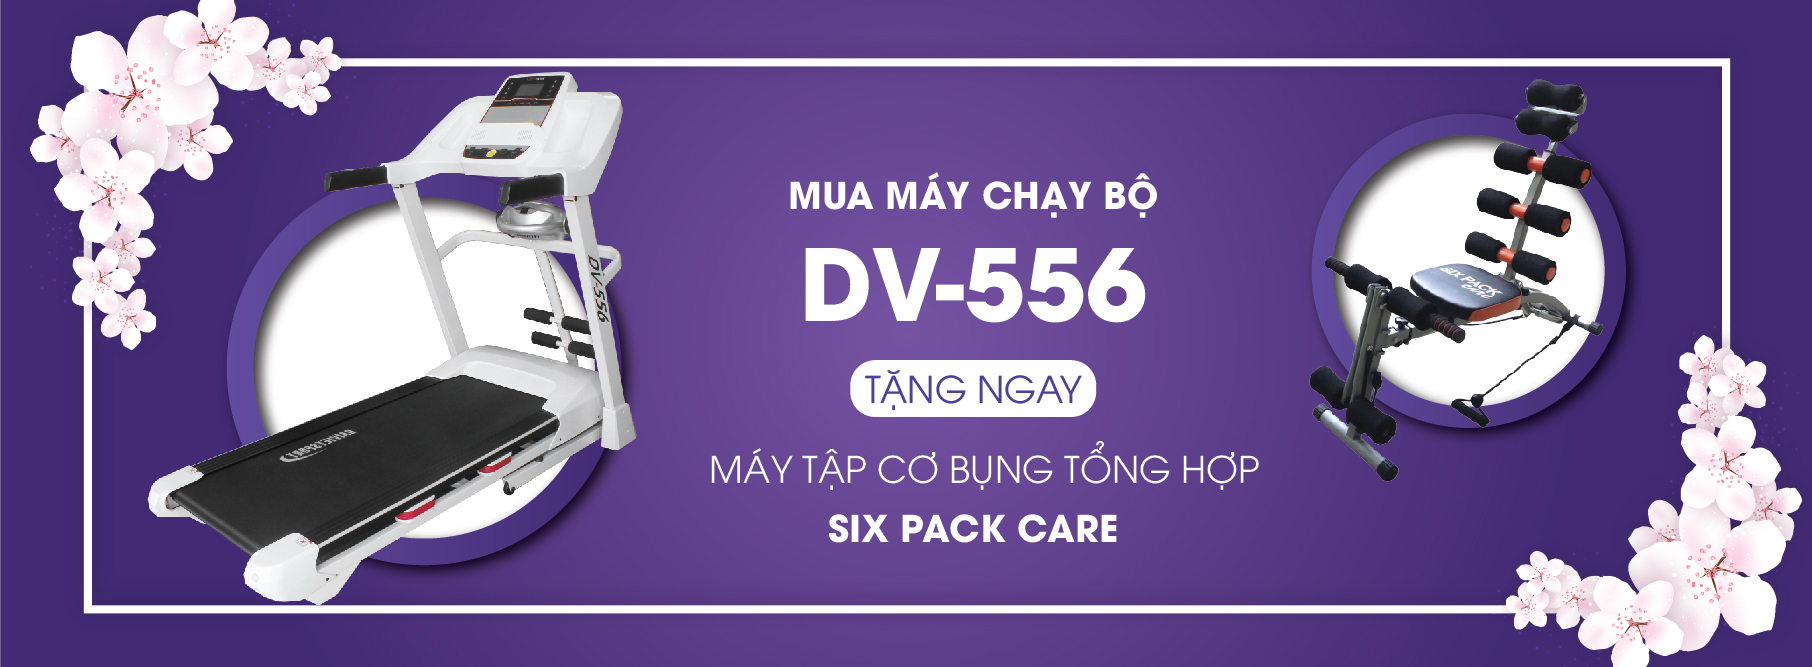 DV-556